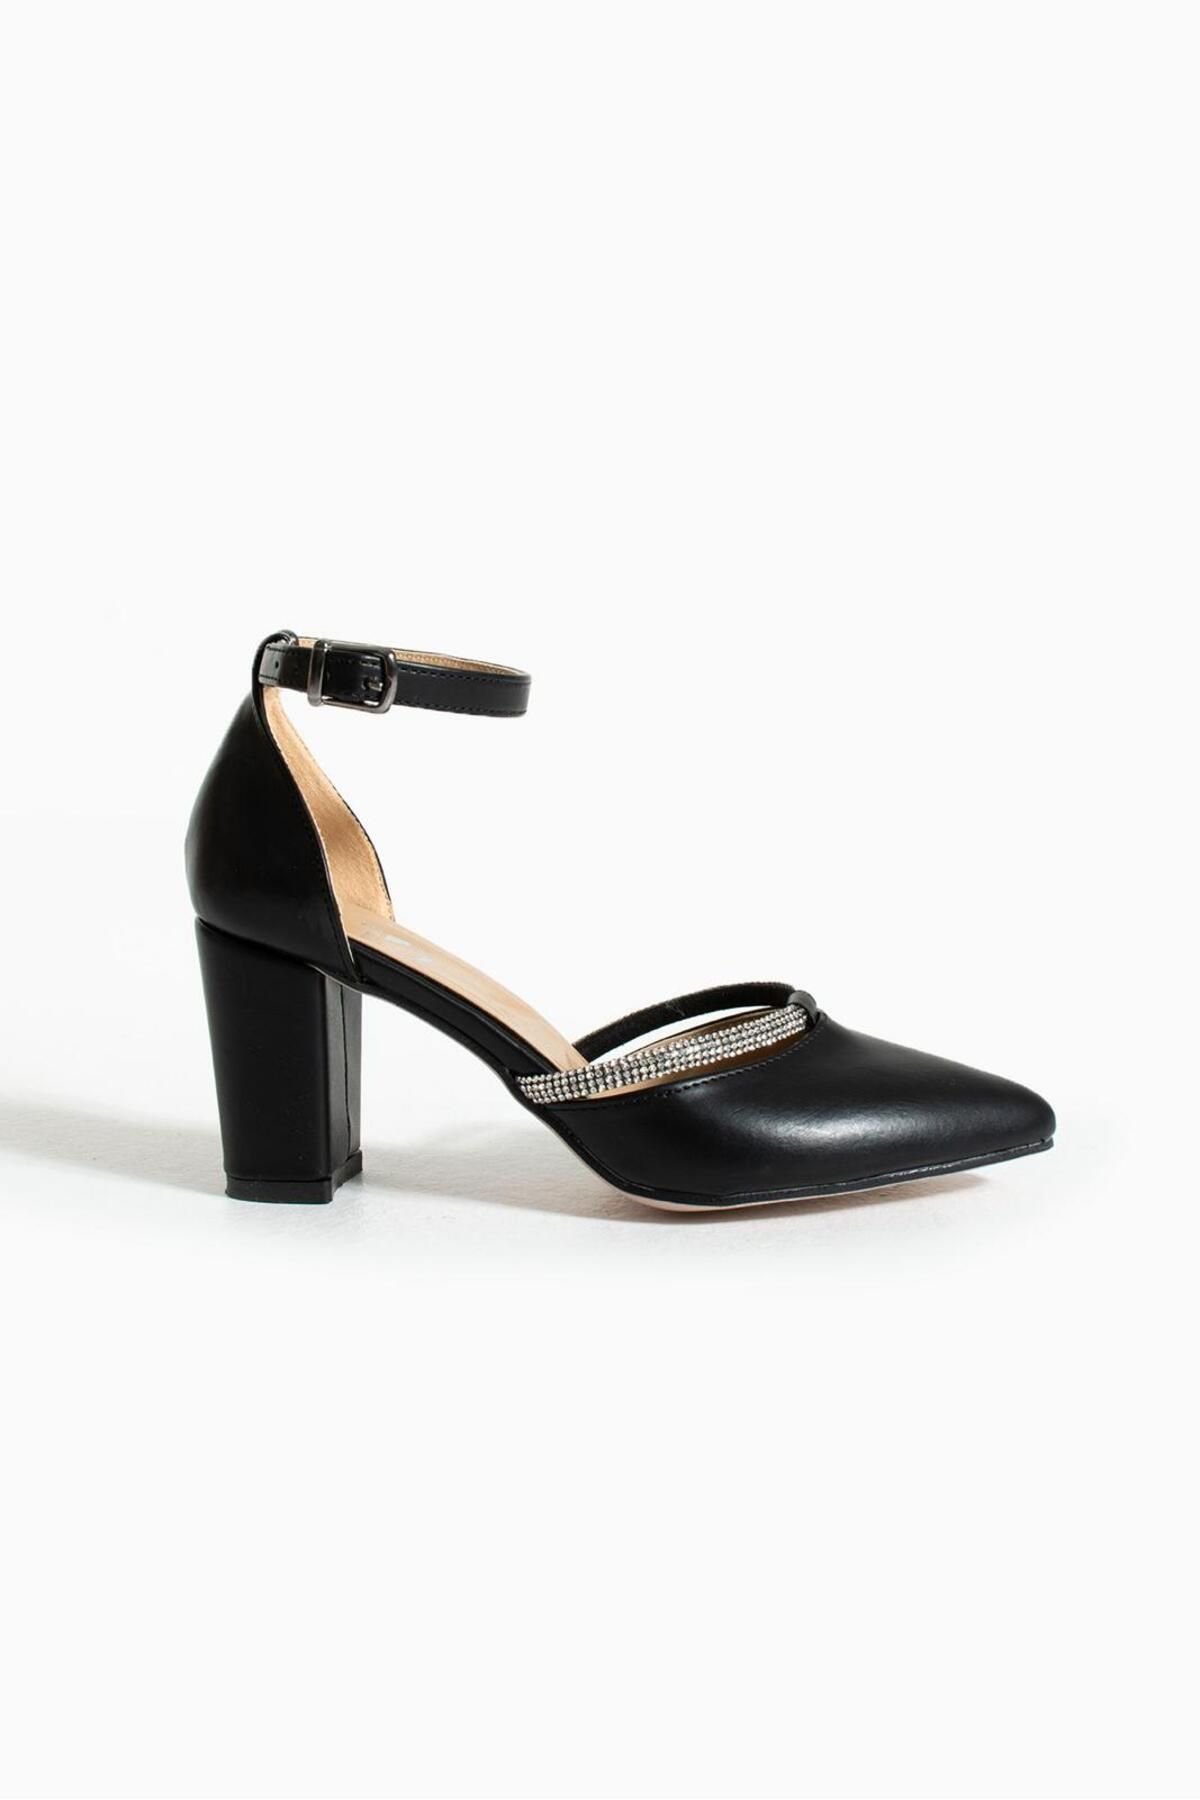 galya shoes Kadın Siyah Sivri 7 Cm Taşlı Yeni Klasik Ayakkabı